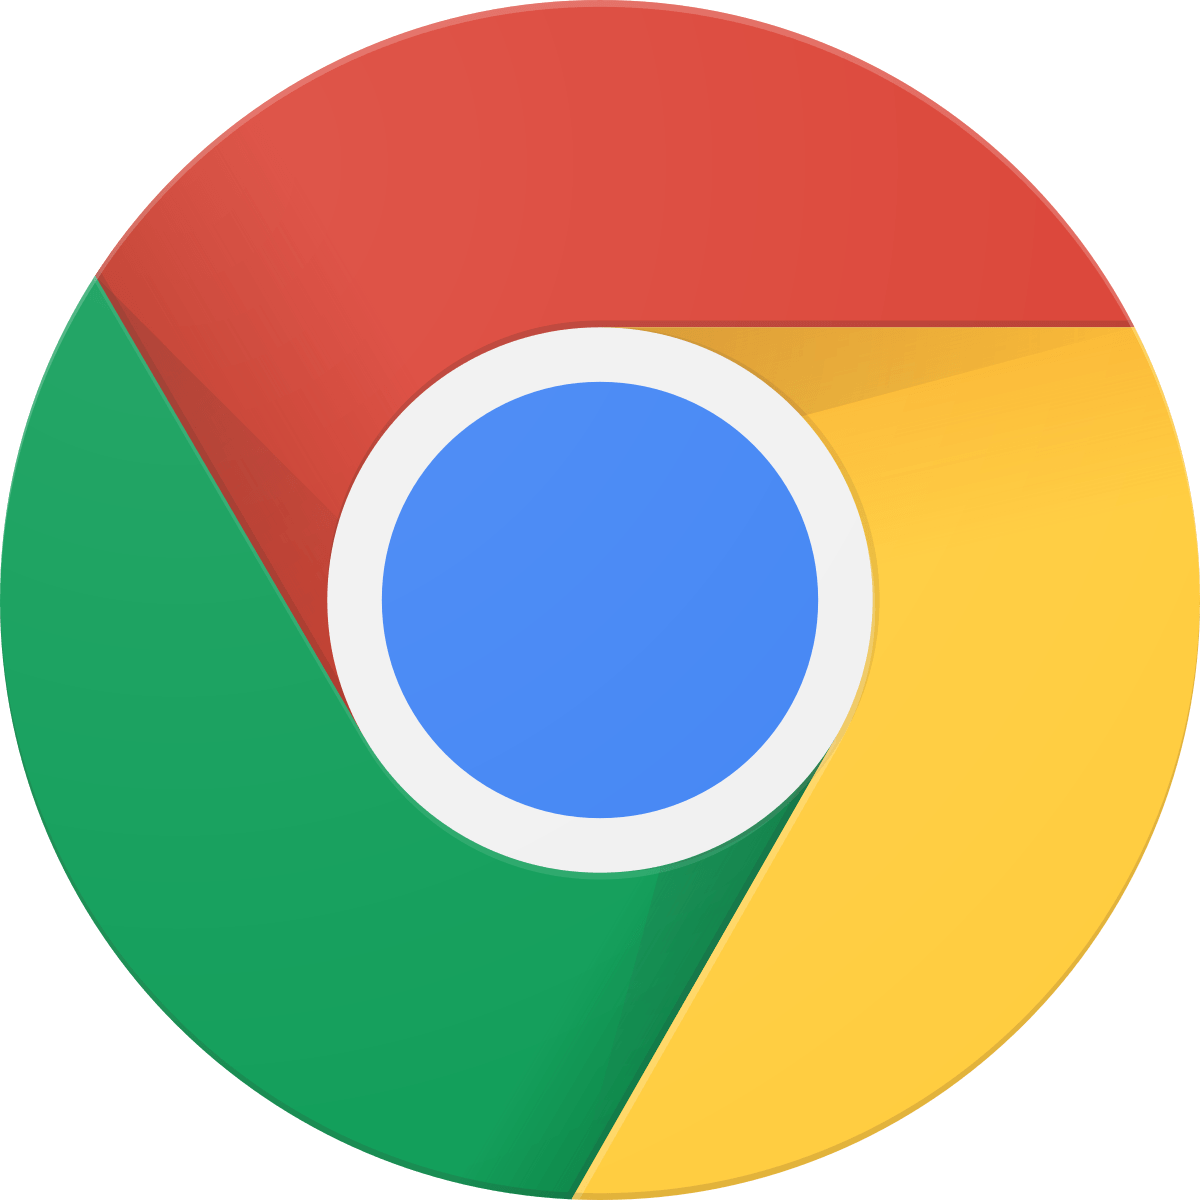 Official Google Chrome Logo - Google Chrome